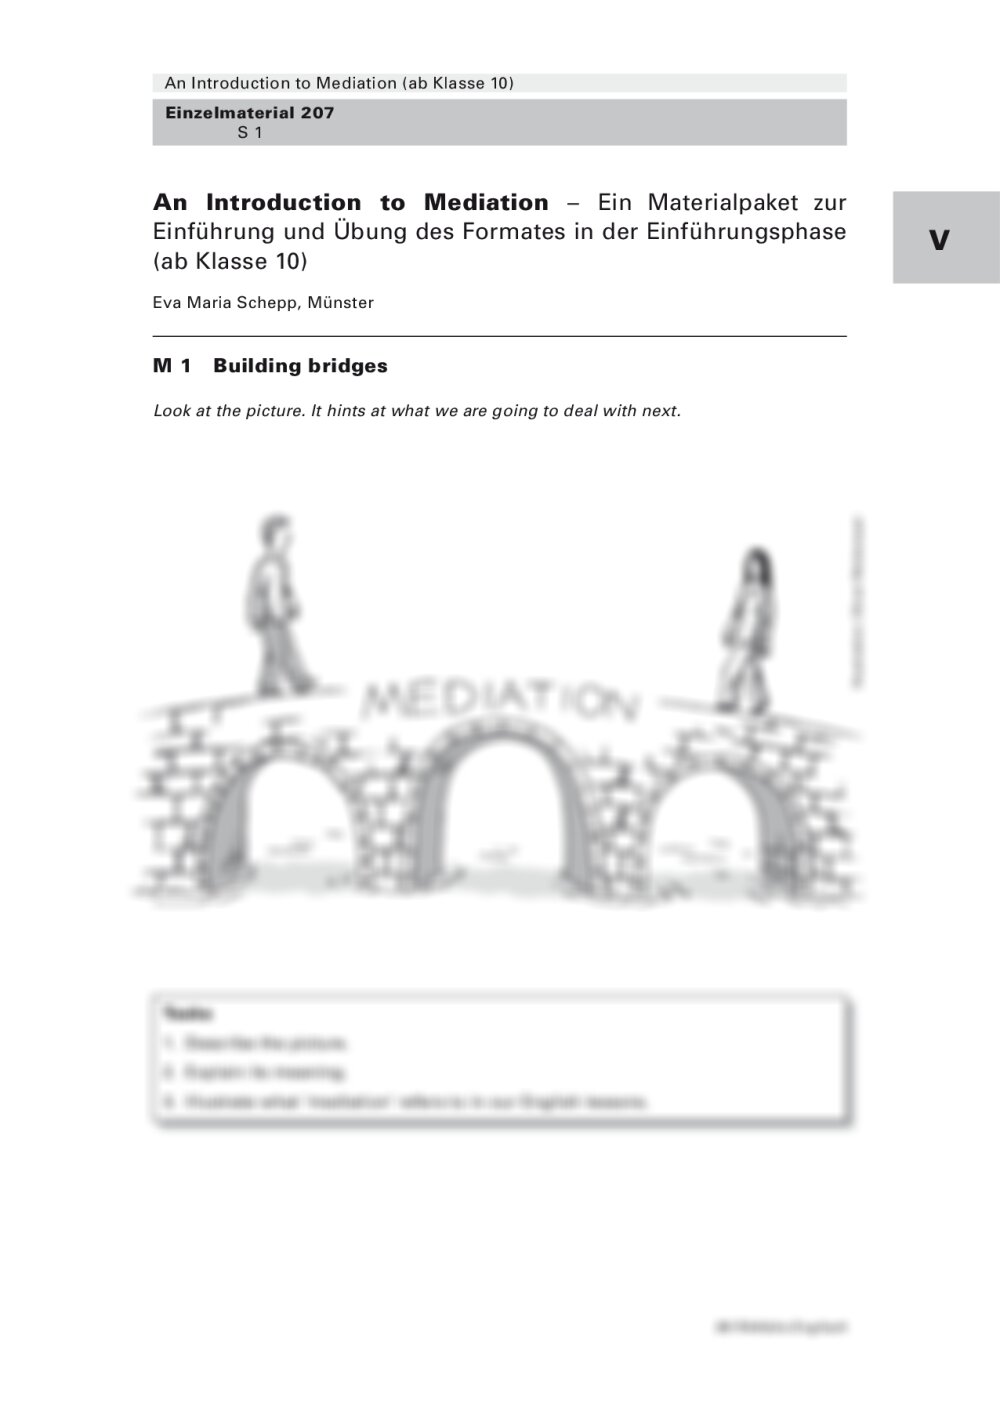 Ein Materialpaket zur Einführung und Übung der Meditation - Seite 1